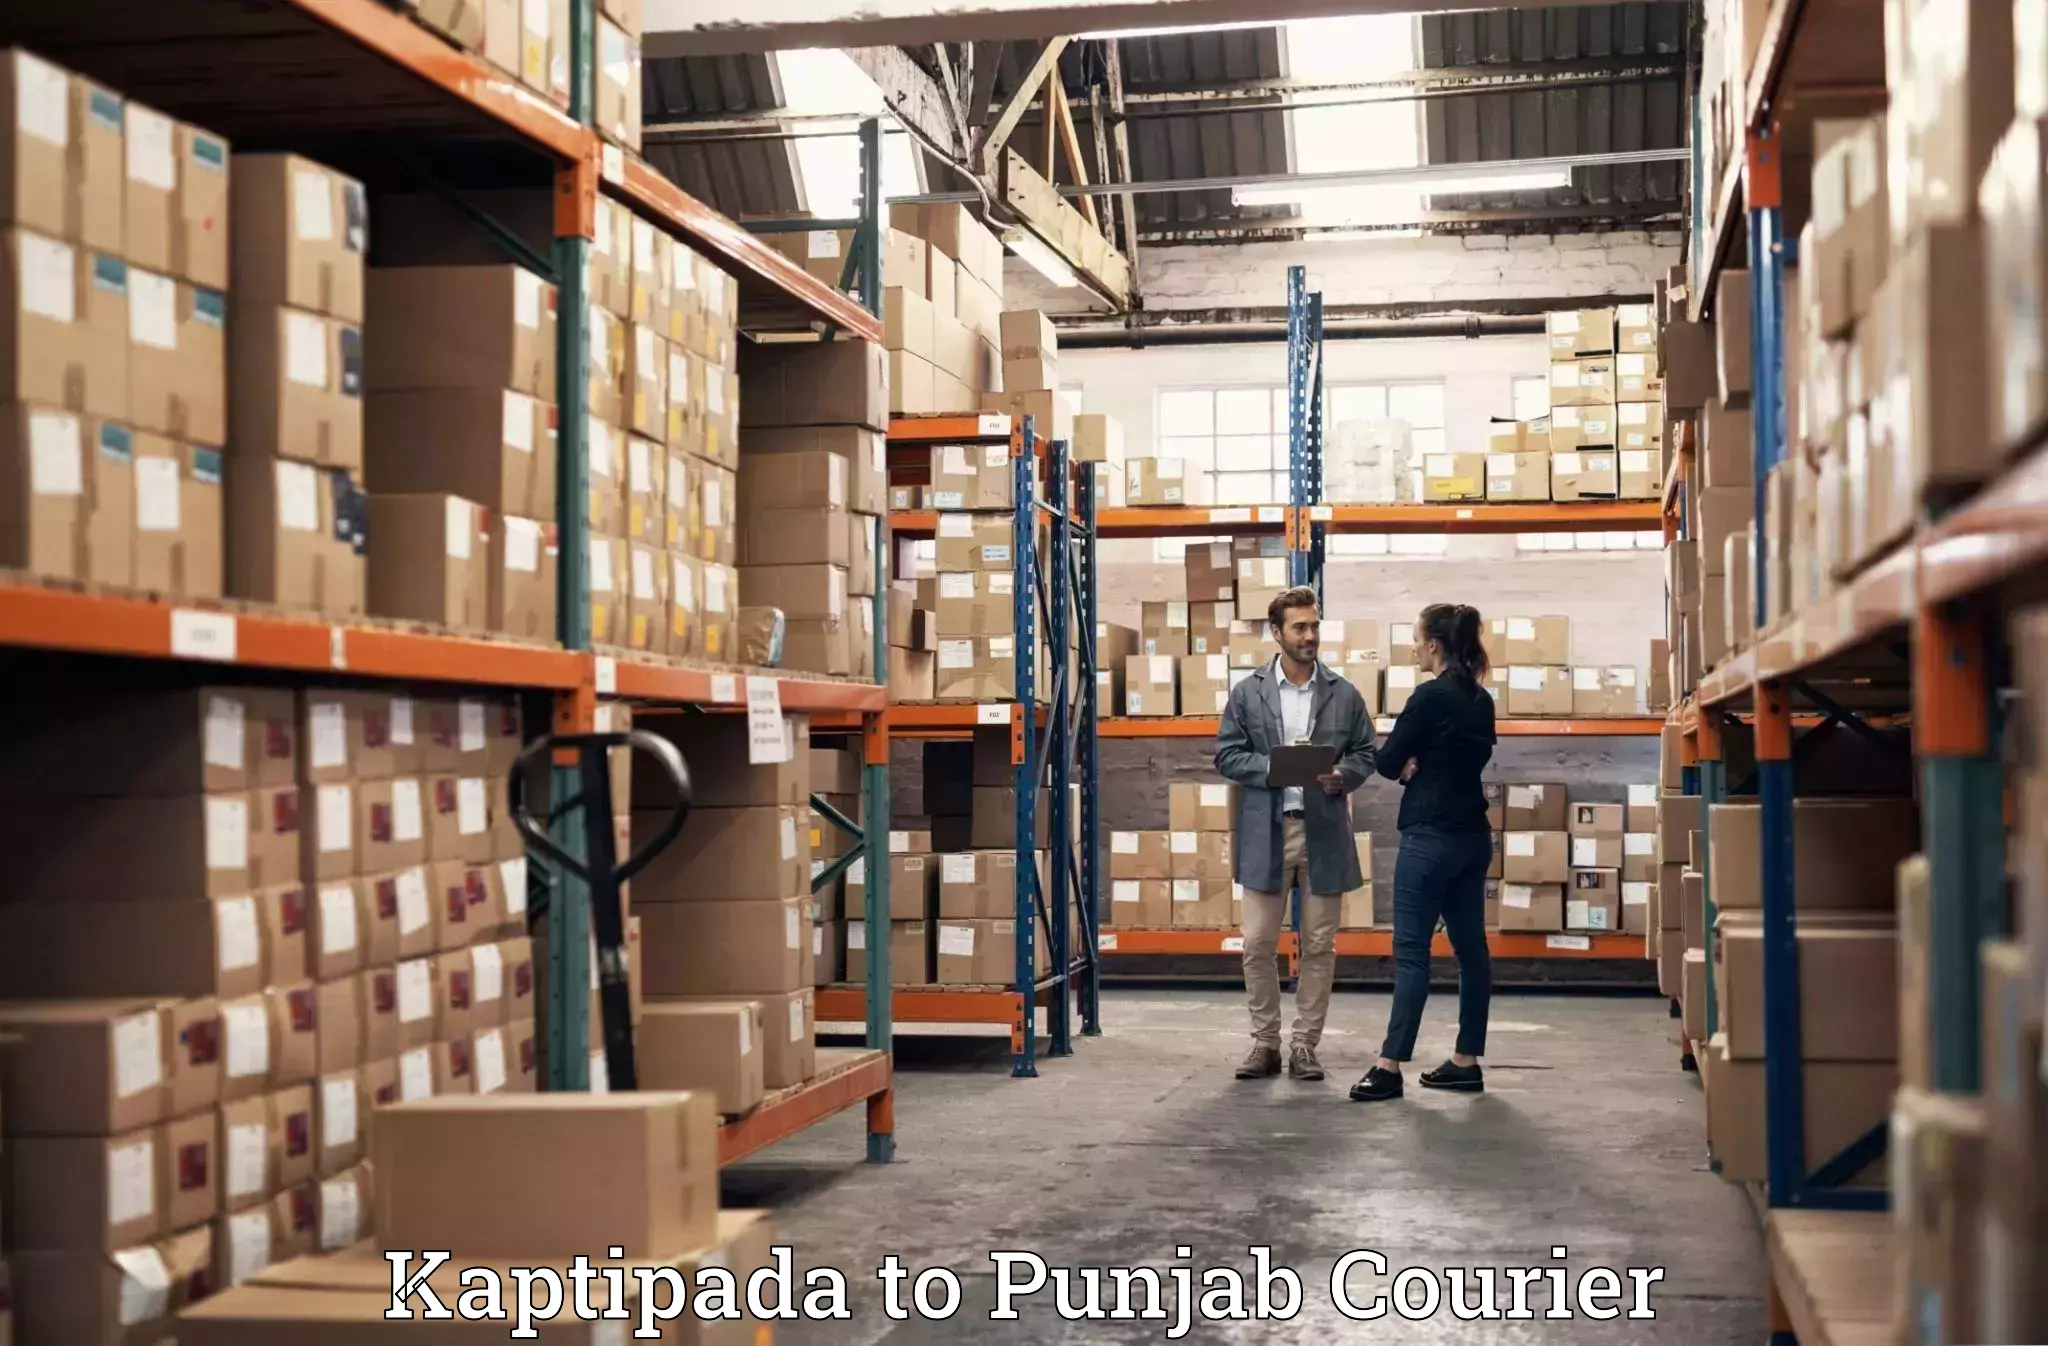 Luggage delivery system Kaptipada to Central University of Punjab Bathinda